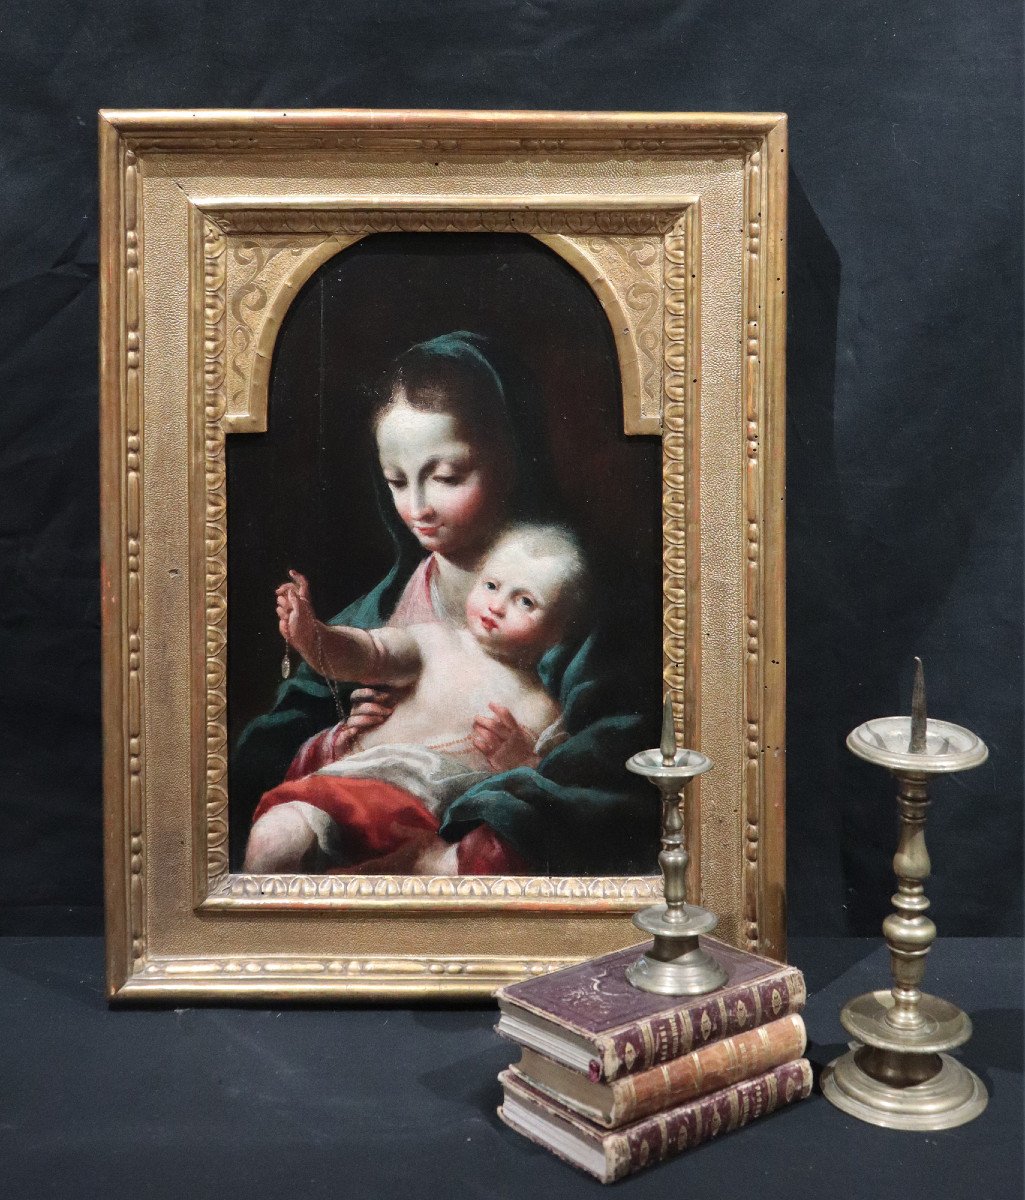 Scuola veneta, Madonna con bambino, fine '600